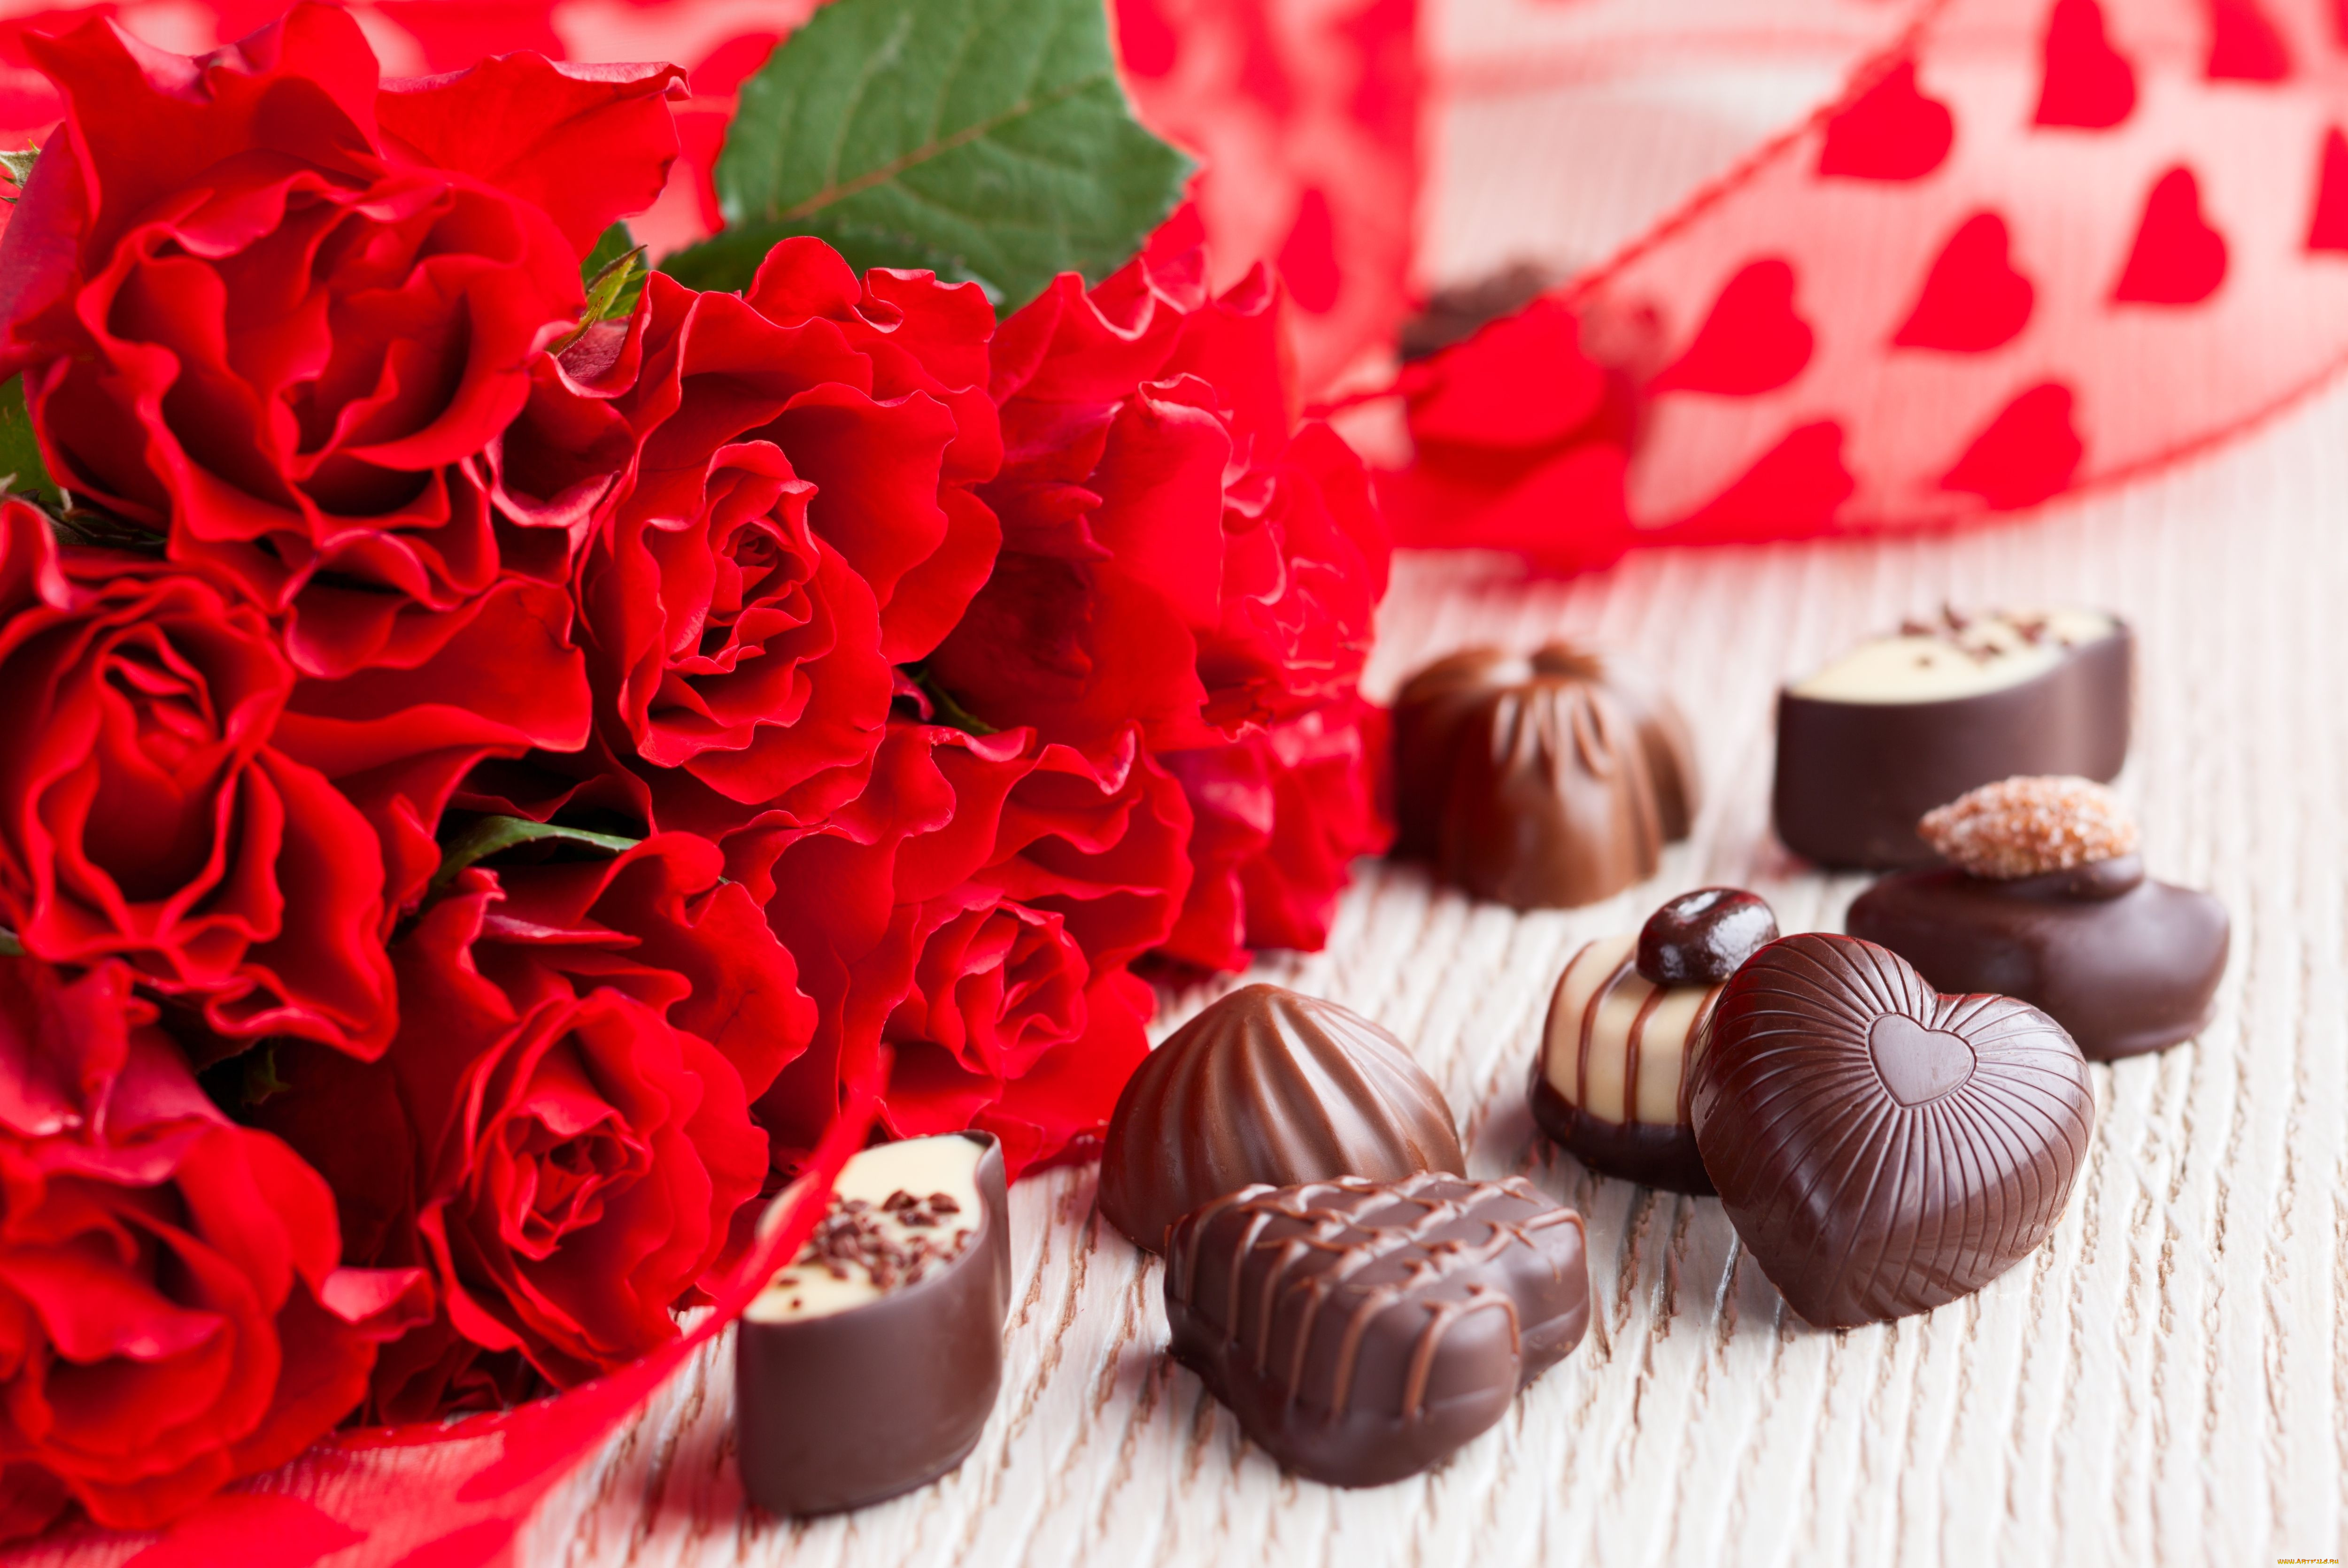 Цветы и шоколадка. Цветы с конфетами. Шоколадные конфеты и цветы. Красивые конфеты. Розы с конфетами.